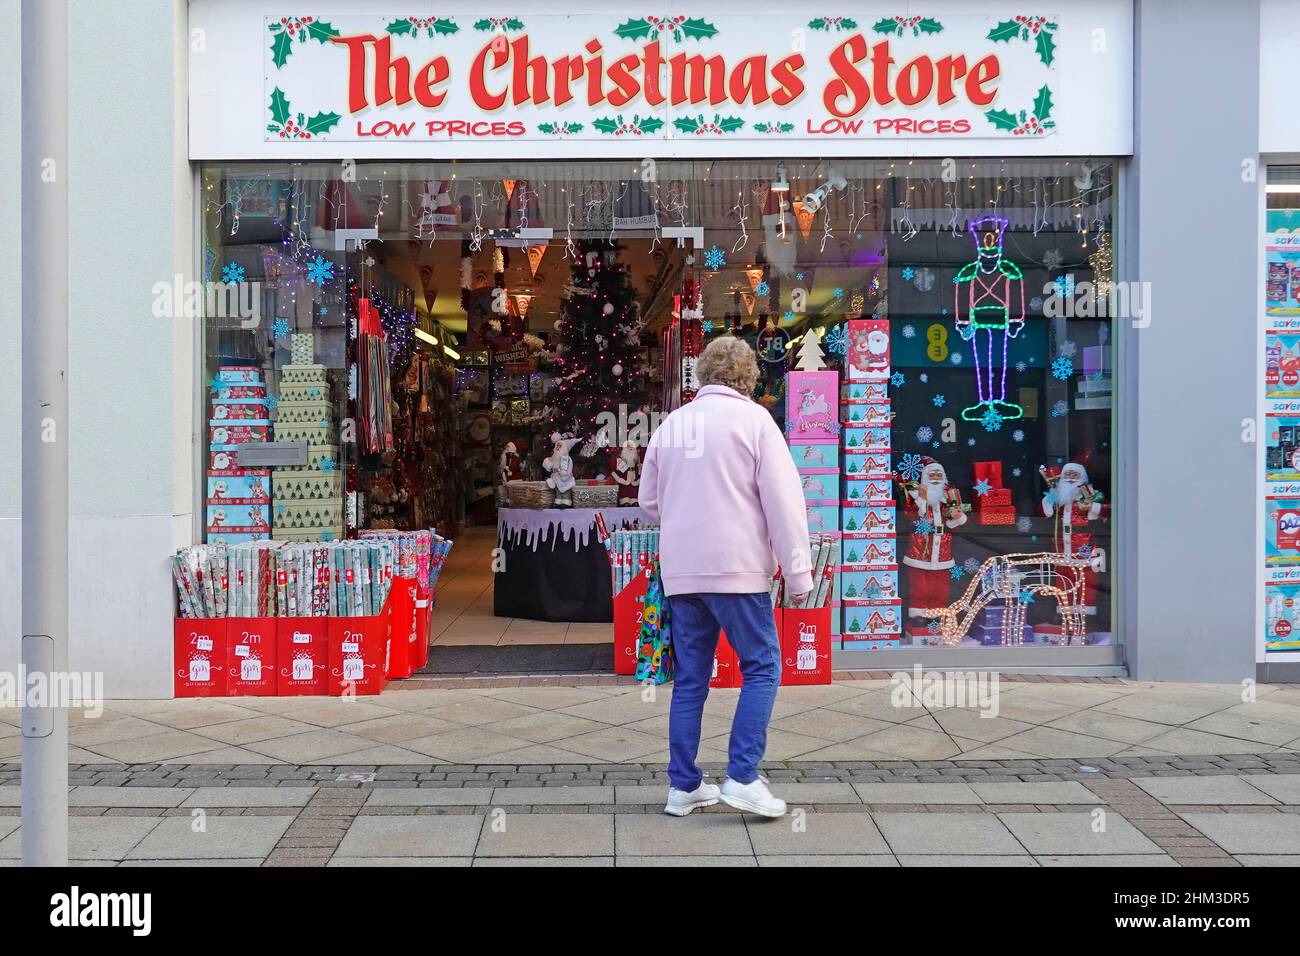 Compras en el exterior de la tienda de Navidad tienda de artículos navideños en exposición en pop up comercio corto dejar el centro comercial Brentwood Reino Unido Foto de stock